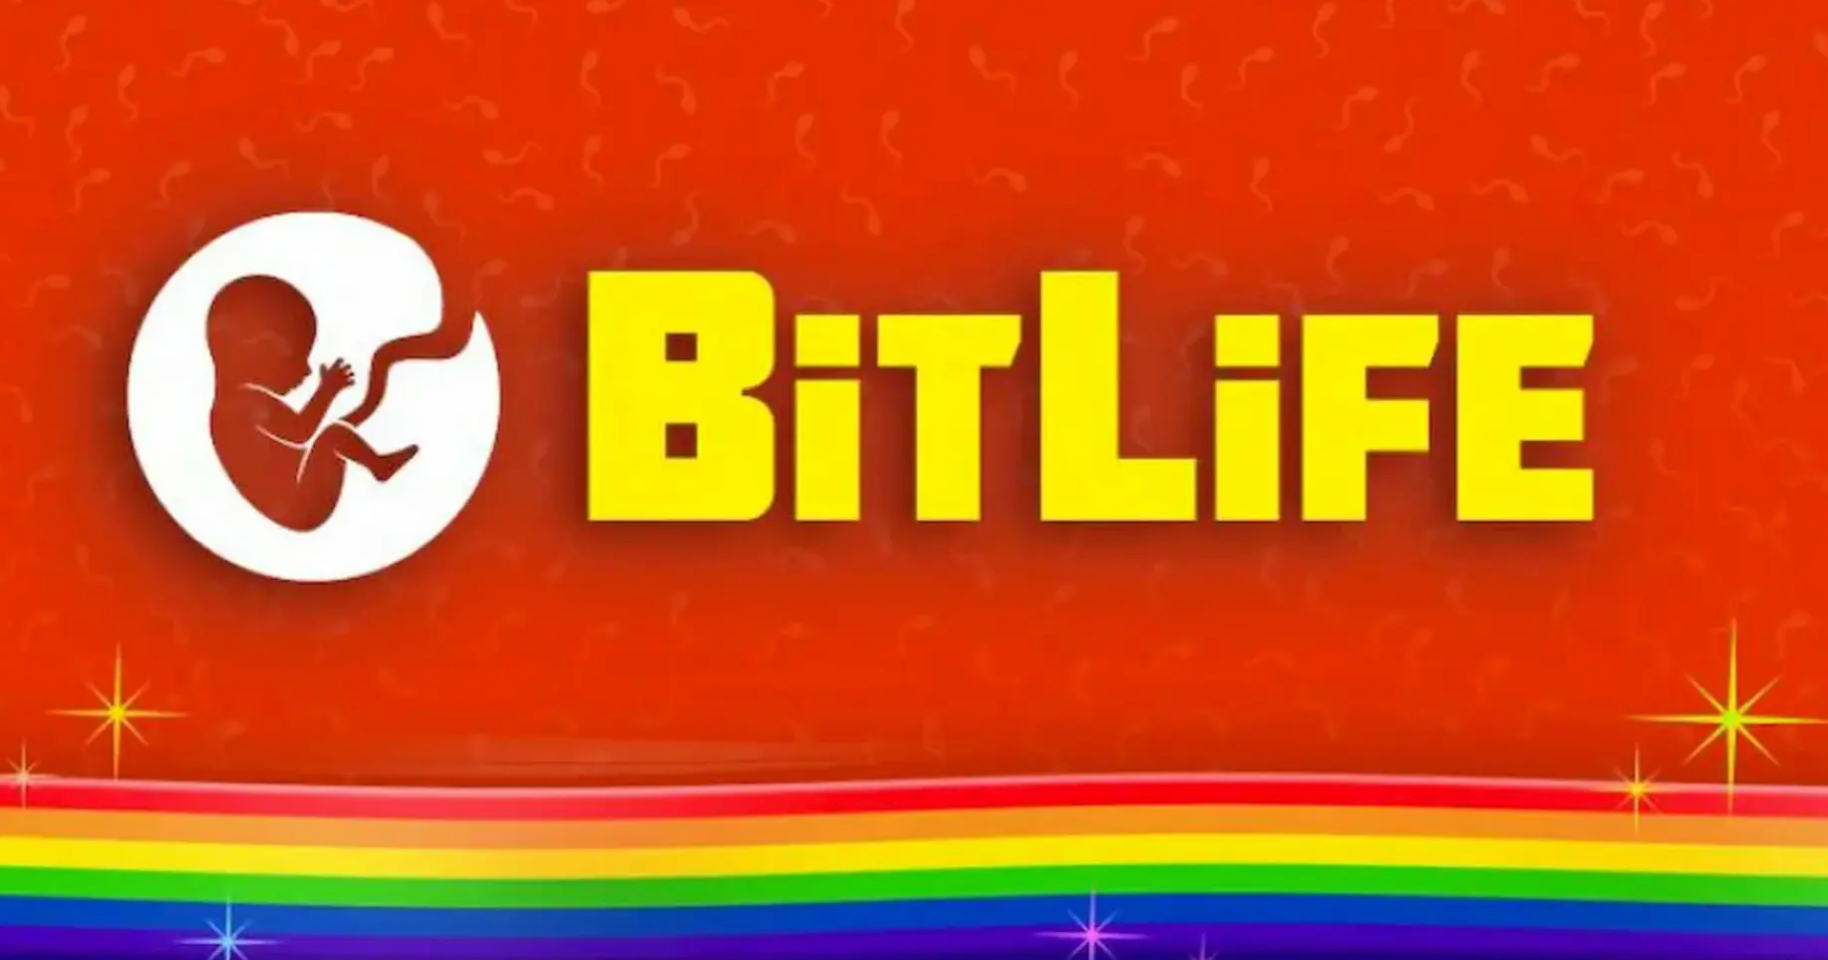 'BitLife' title